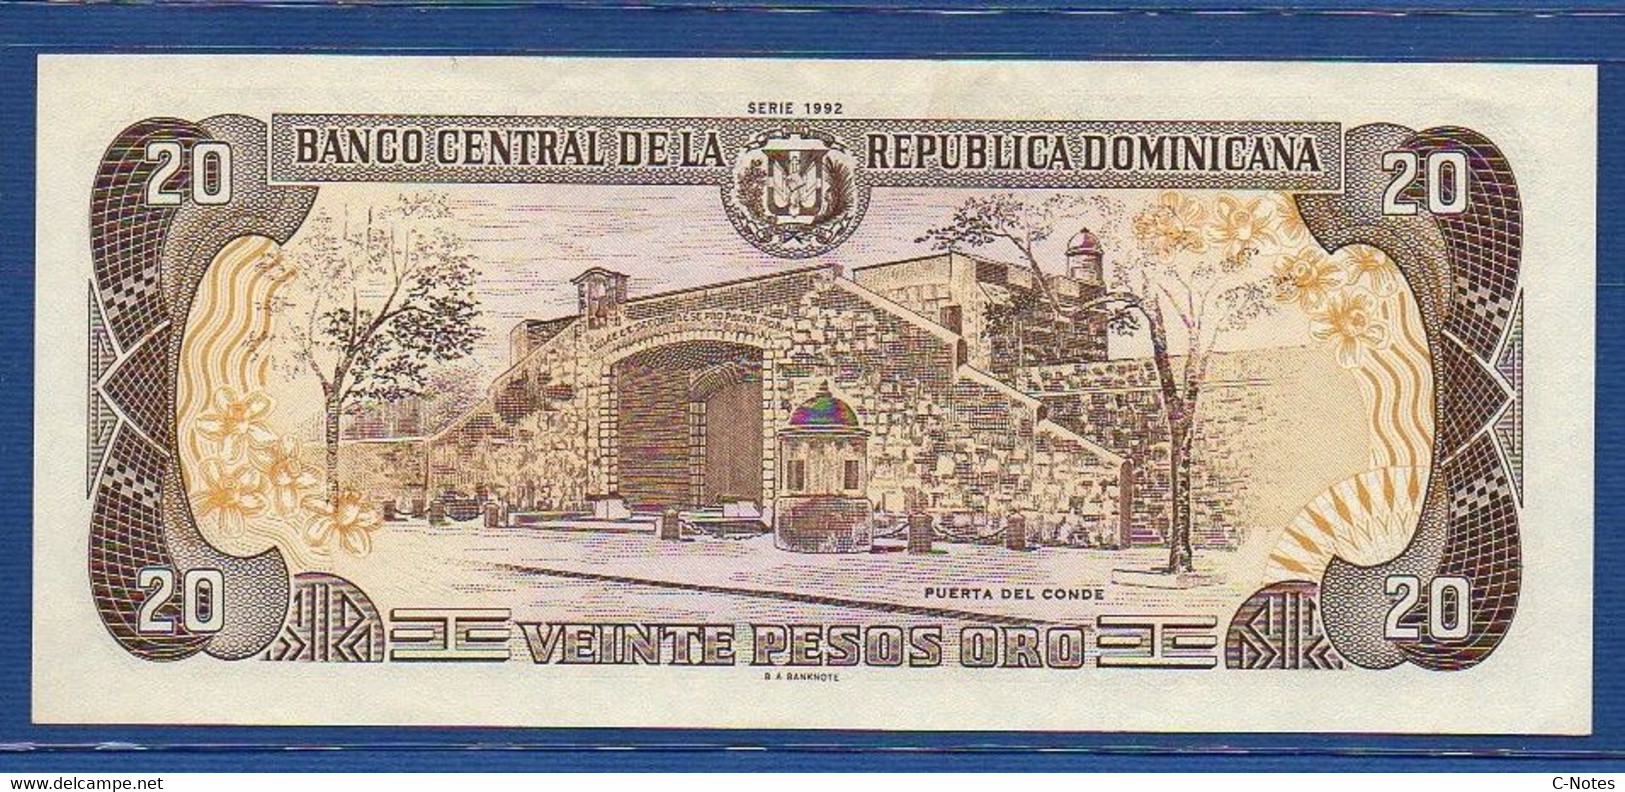 DOMINICAN REPUBLIC - P.139 – 20 Pesos Oro 1992 AUNC, Serie F 956156 J Commemorative Issue - Dominicana